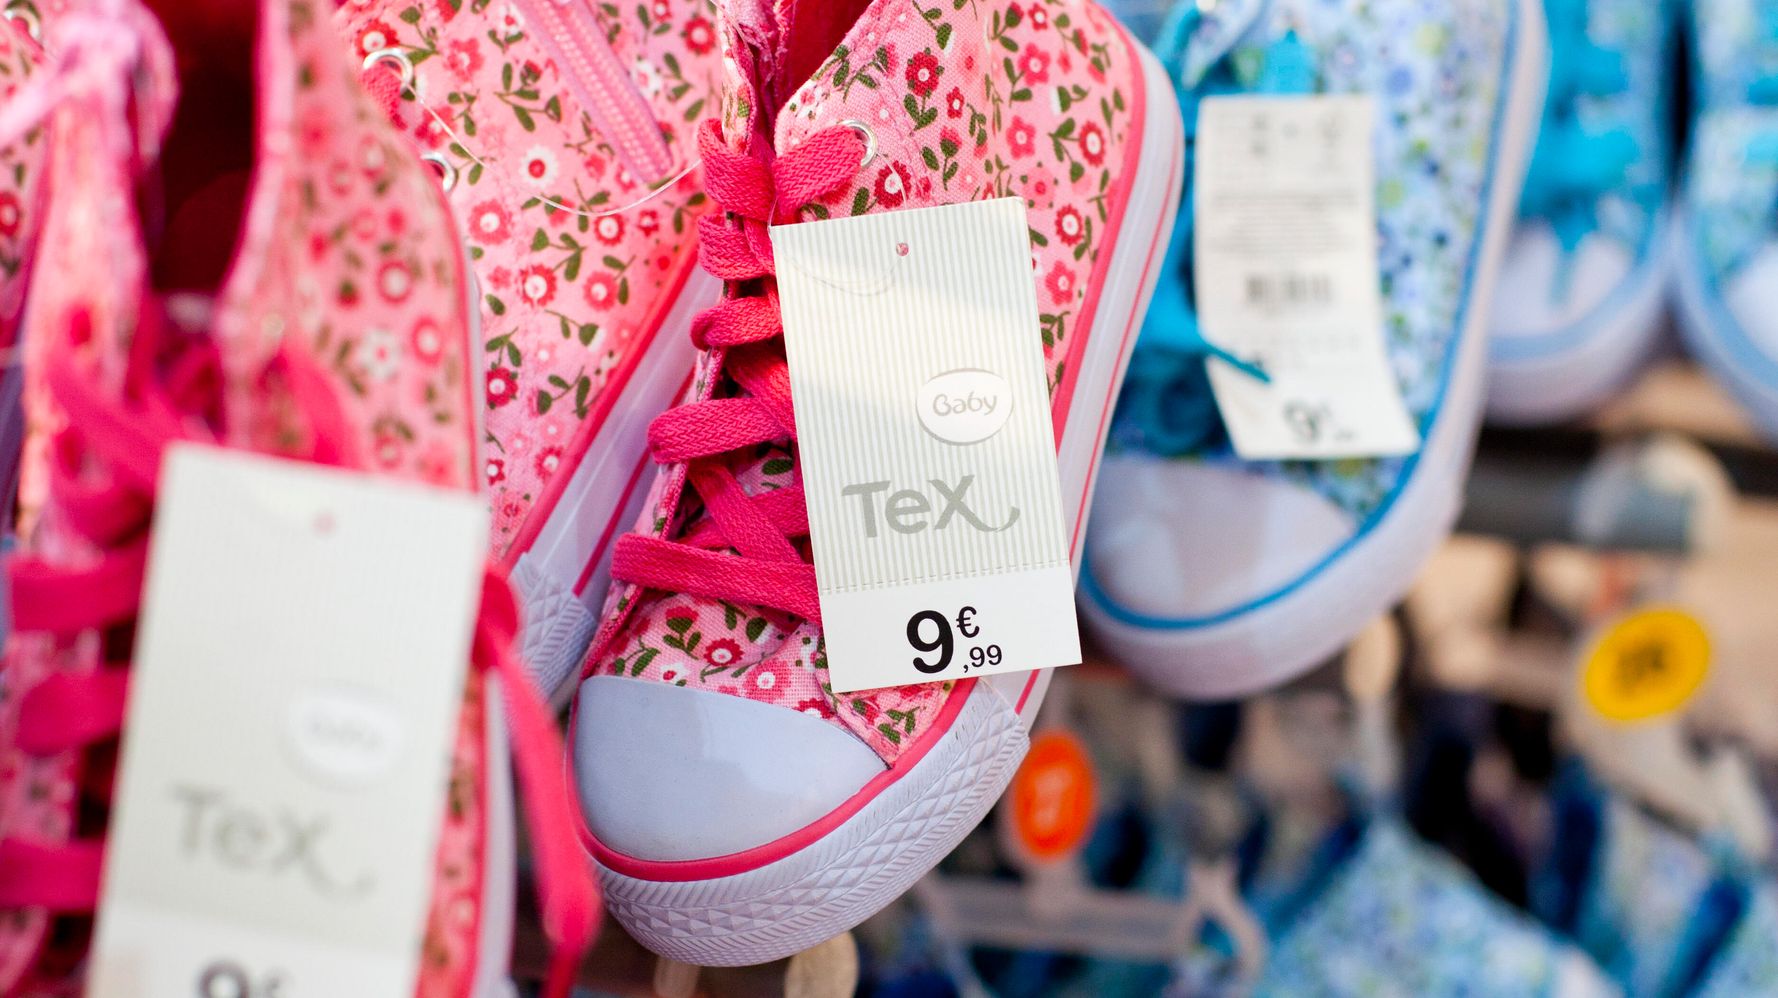 Por qué Tex, la marca ropa de Carrefour, hace temblar a Zara y Primark | El HuffPost Life